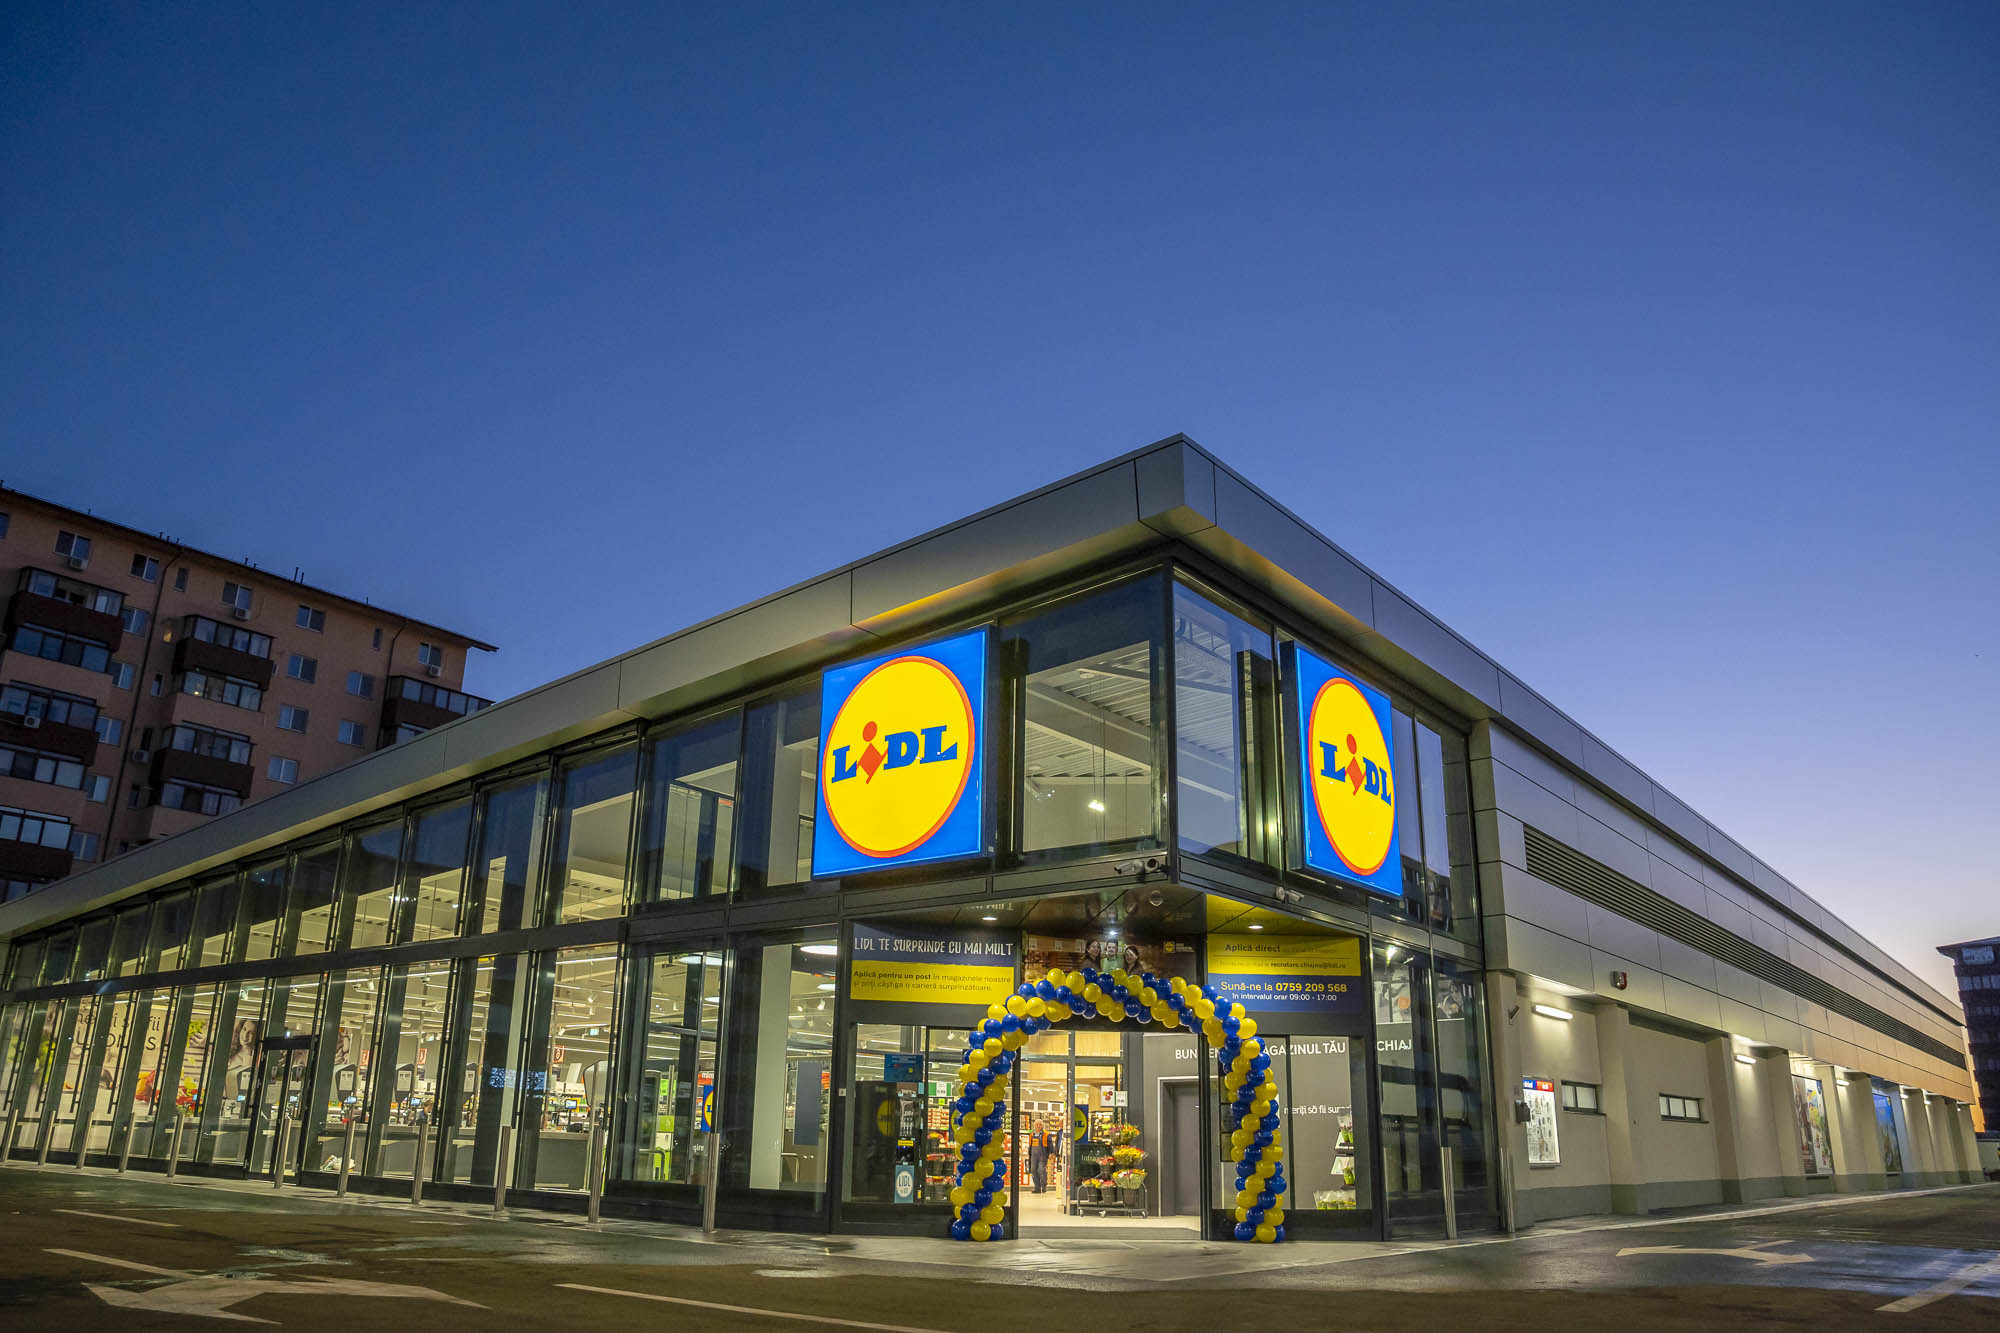 Retailerul german Lidl a deschis în 2020 peste 30 de magazine, de două ori mai multe decât şi-a propus la începutul anului. Acesta este cel mai alert ritm de expansiune de la intrarea pe piaţă în 2011